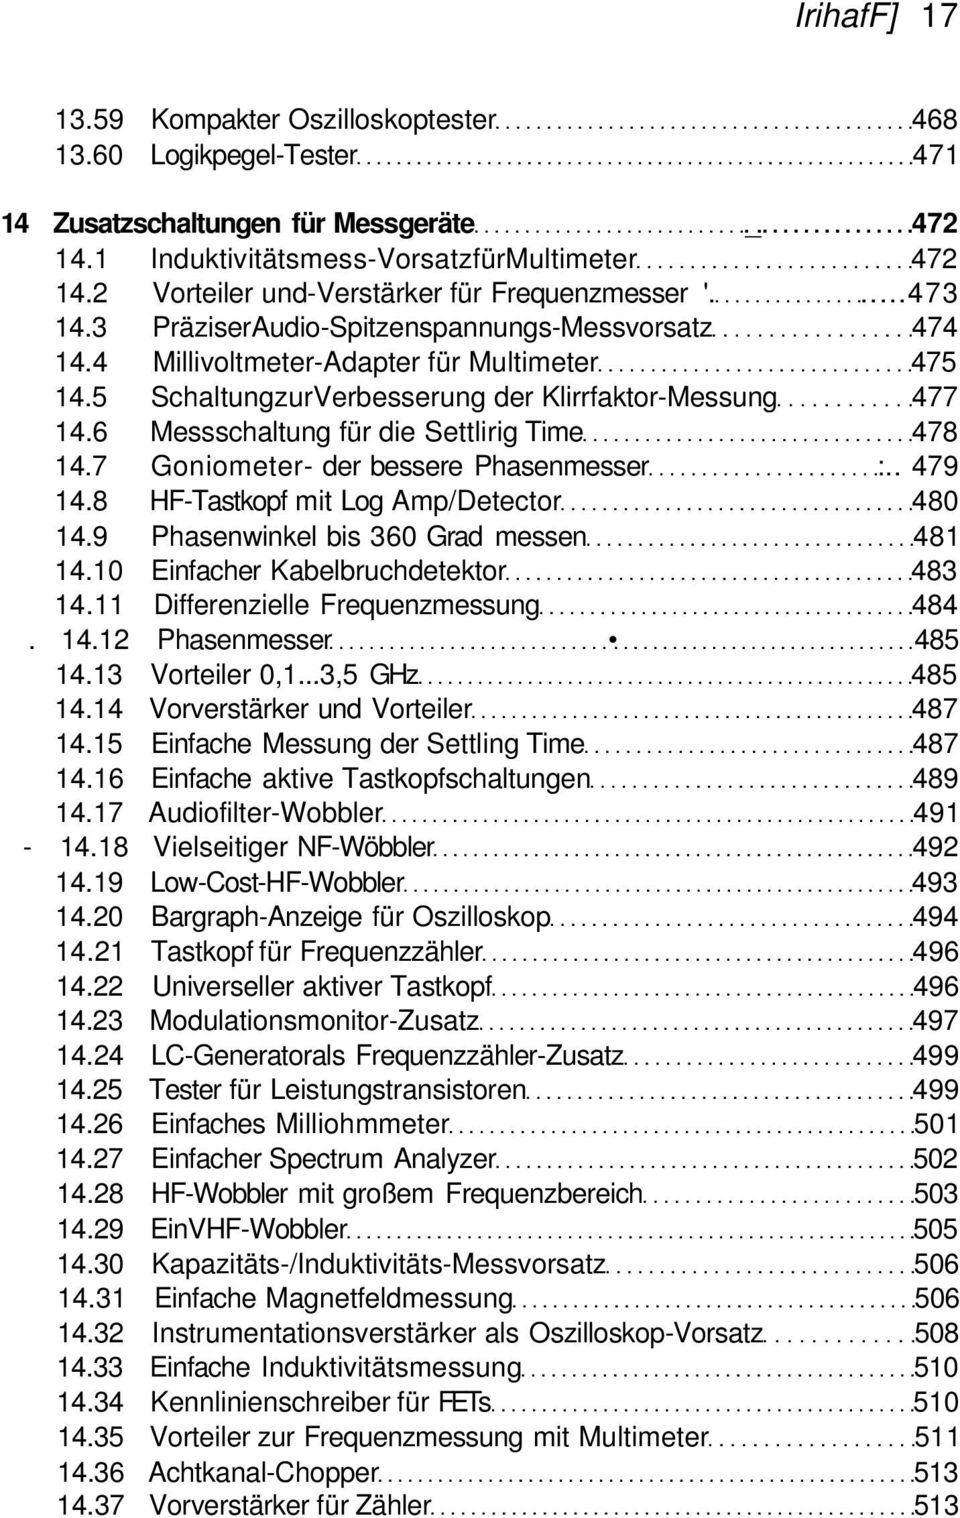 5 SchaltungzurVerbesserung der Klirrfaktor-Messung 477 14.6 Messschaltung für die Settlirig Time 478 14.7 Goniometer- der bessere Phasenmesser :.. 479 14.8 HF-Tastkopf mit Log Amp/Detector 480 14.